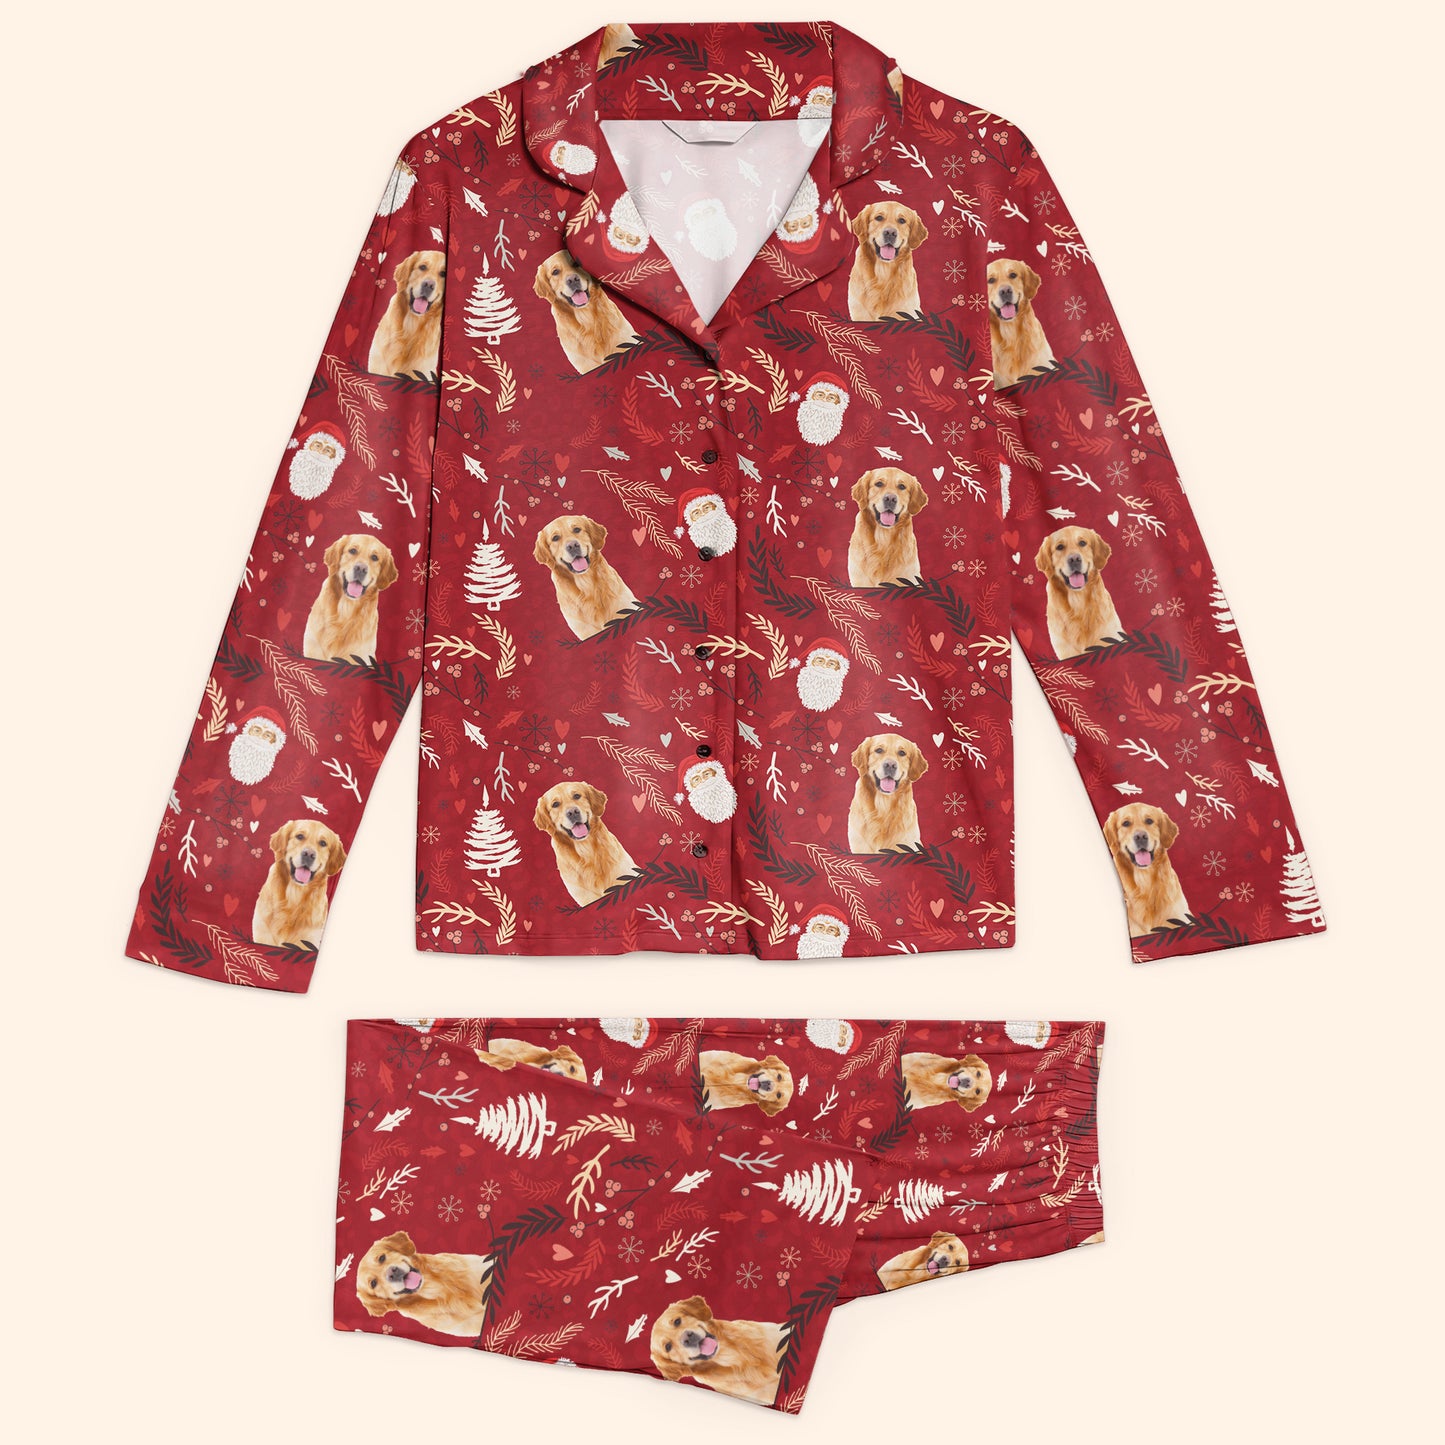 Christmas Pajamas - Personalized Photo Women's Pajamas Set